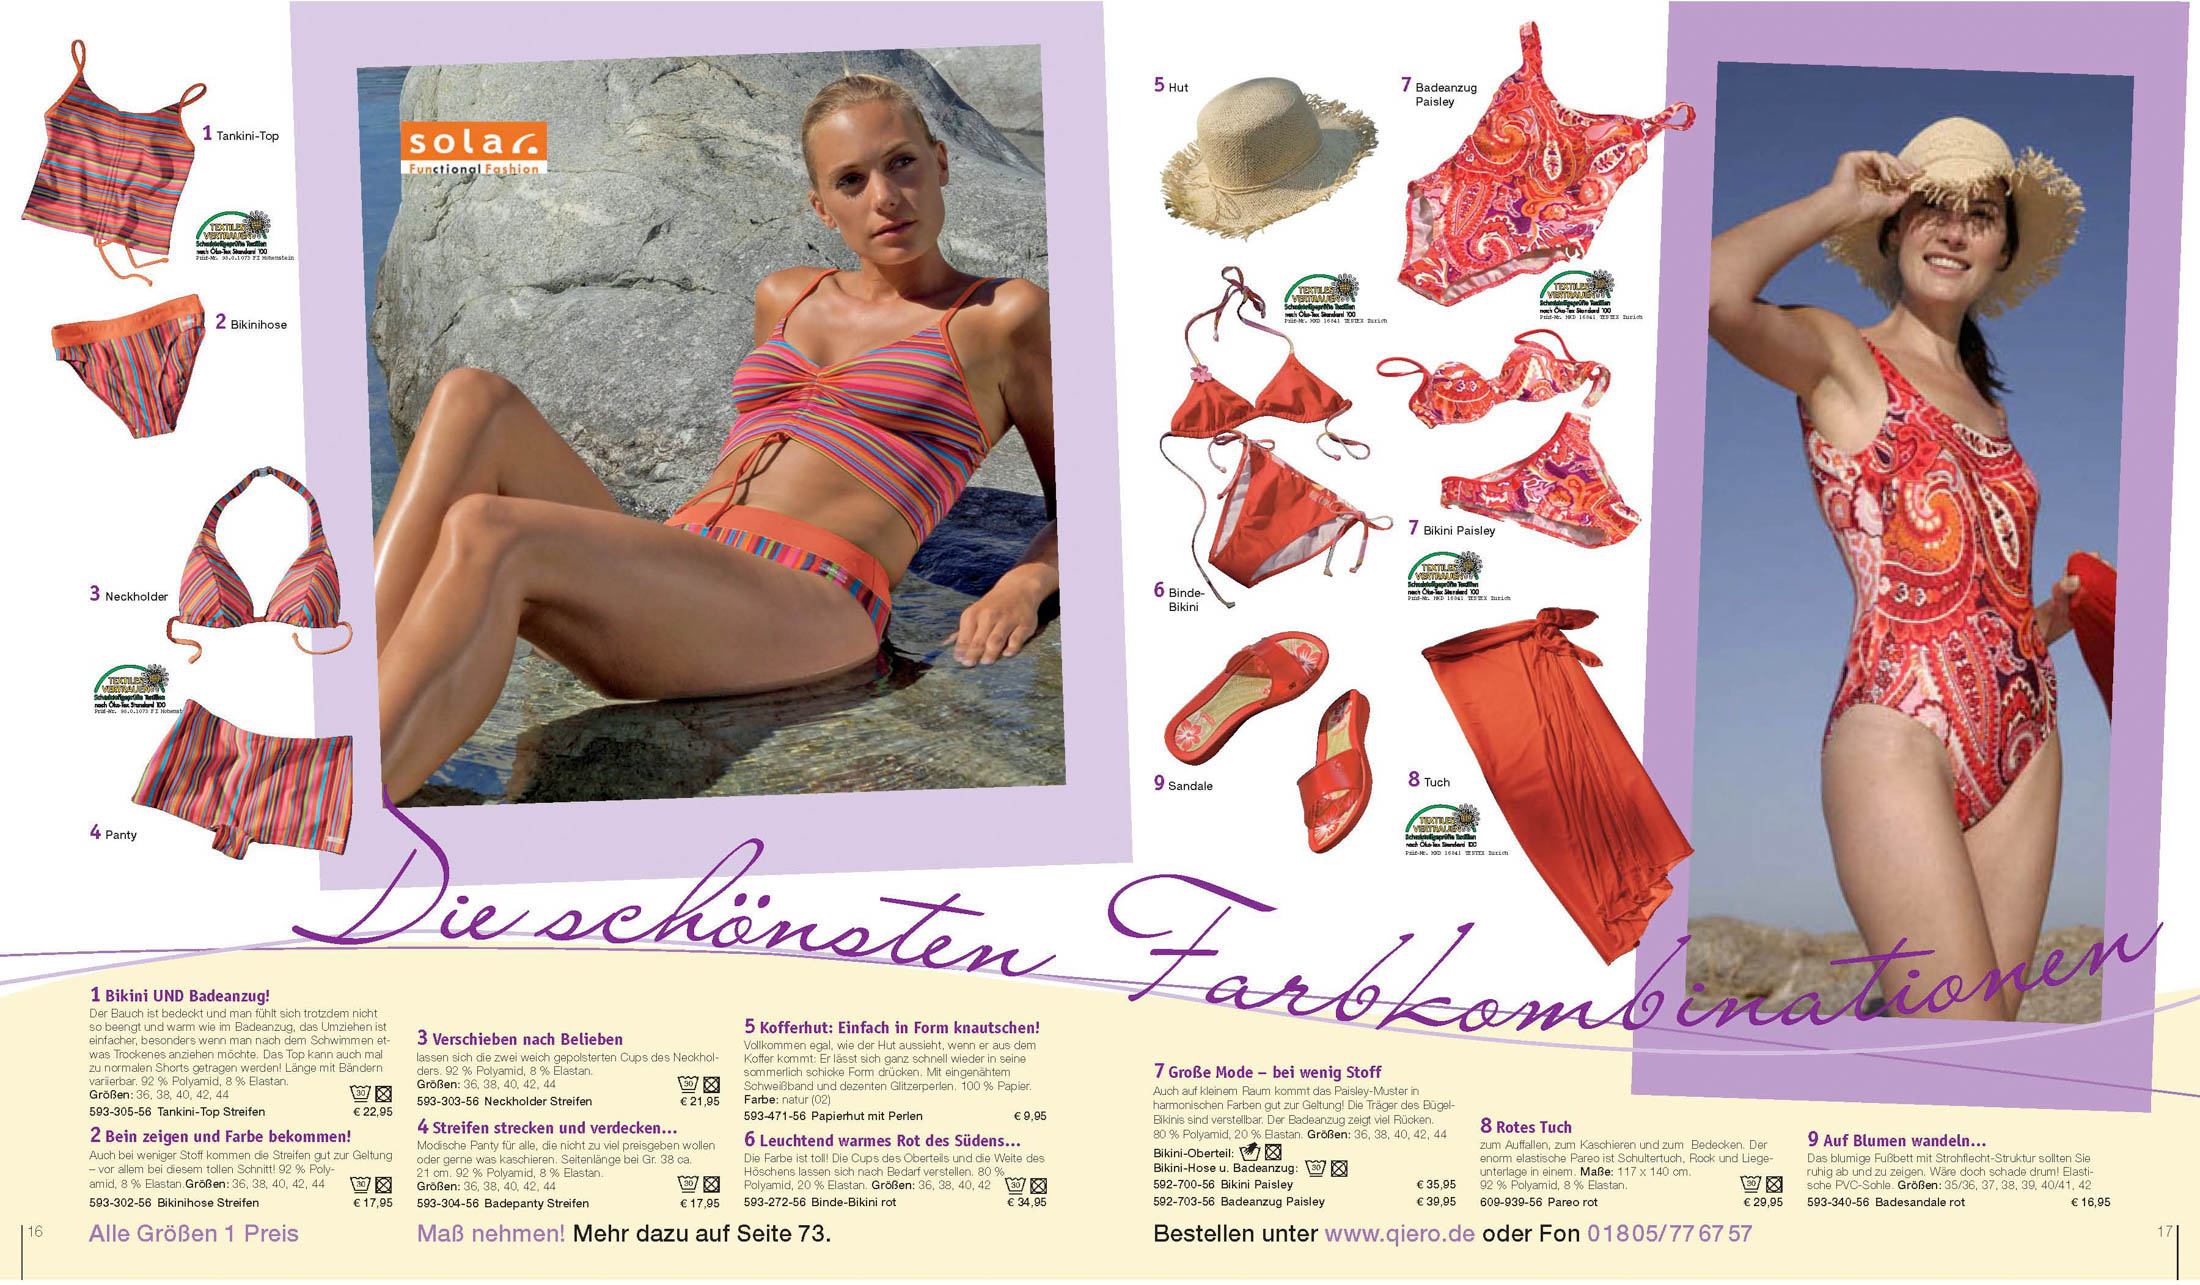 Eine zweiseitige Farbanzeige, die verschiedene Bademoden und Strandaccessoires vorstellt. Sie zeigt Models in verschiedenen Bikinis und Posen, mit Beschreibungen, Preisen und Bestellinformationen. © Fotografie Tomas Rodriguez